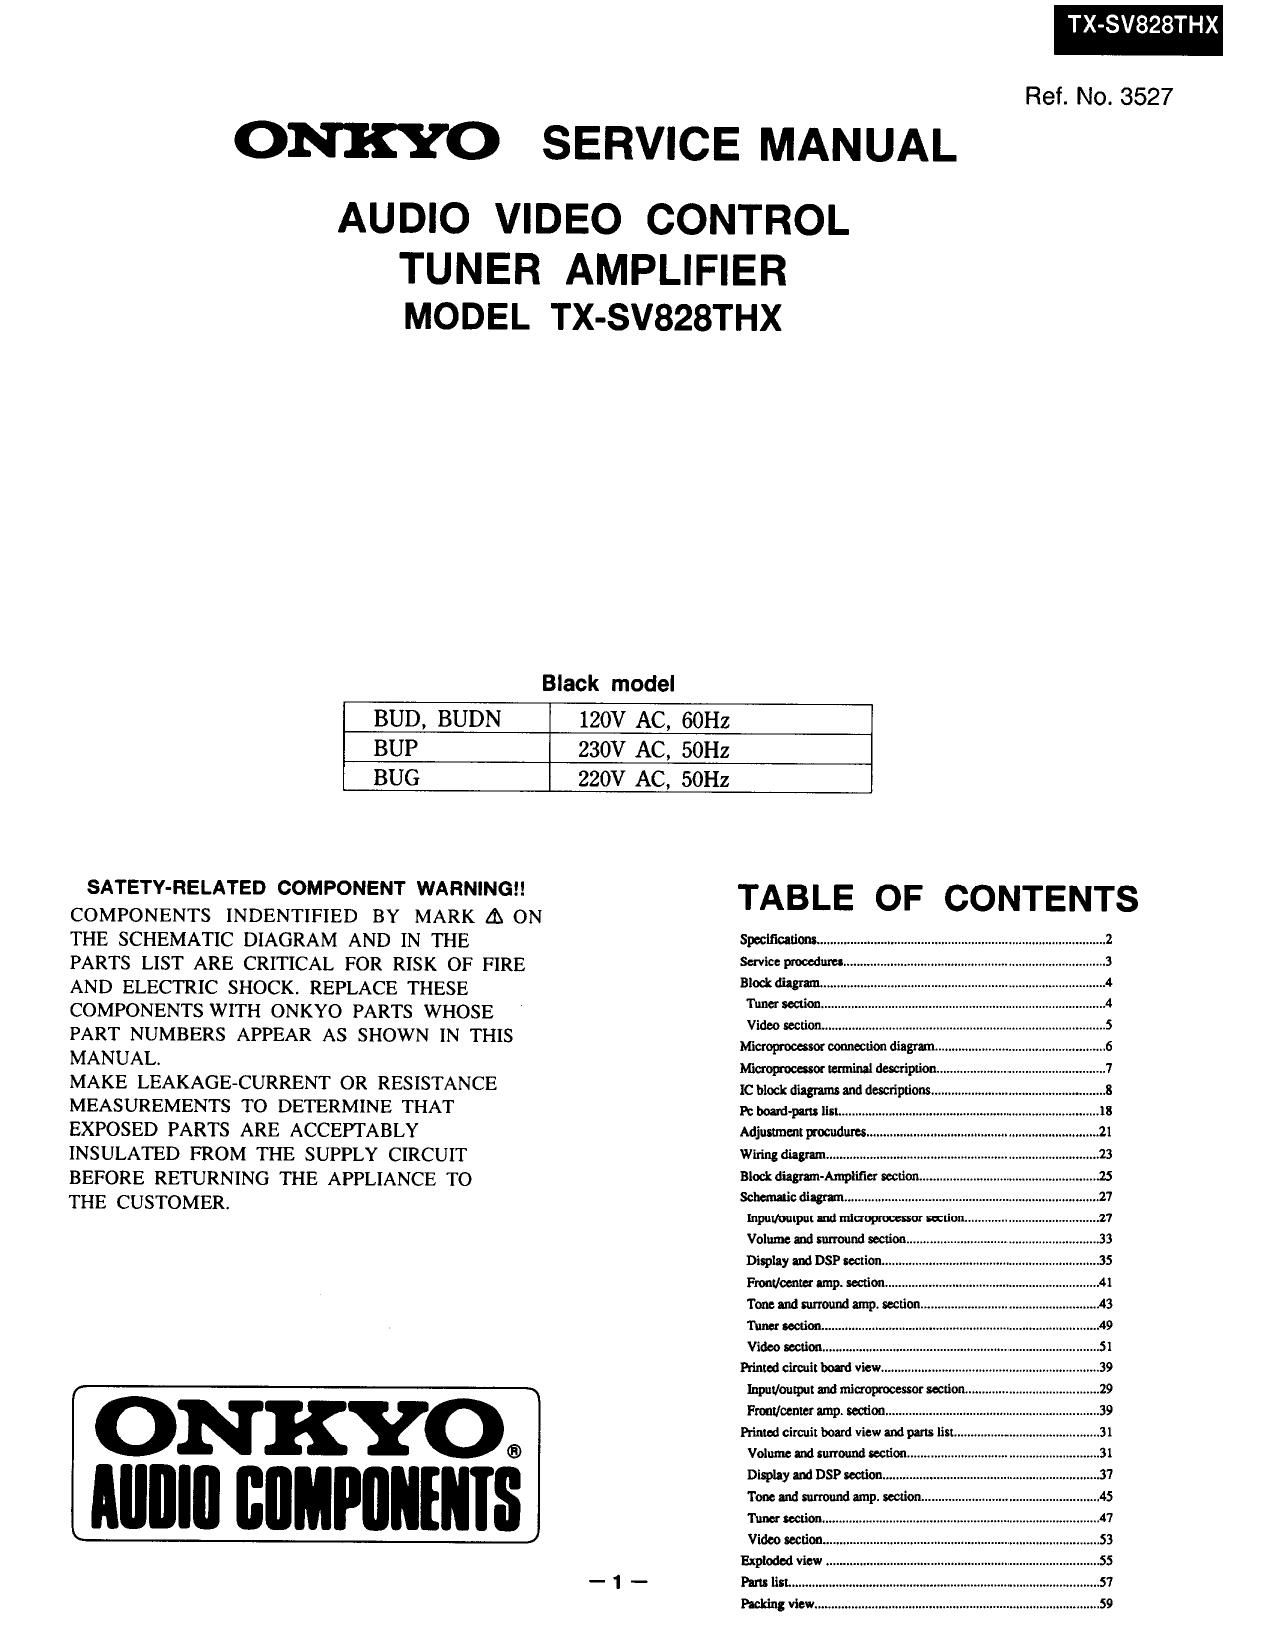 Onkyo TXSV 828 THX Service Manual